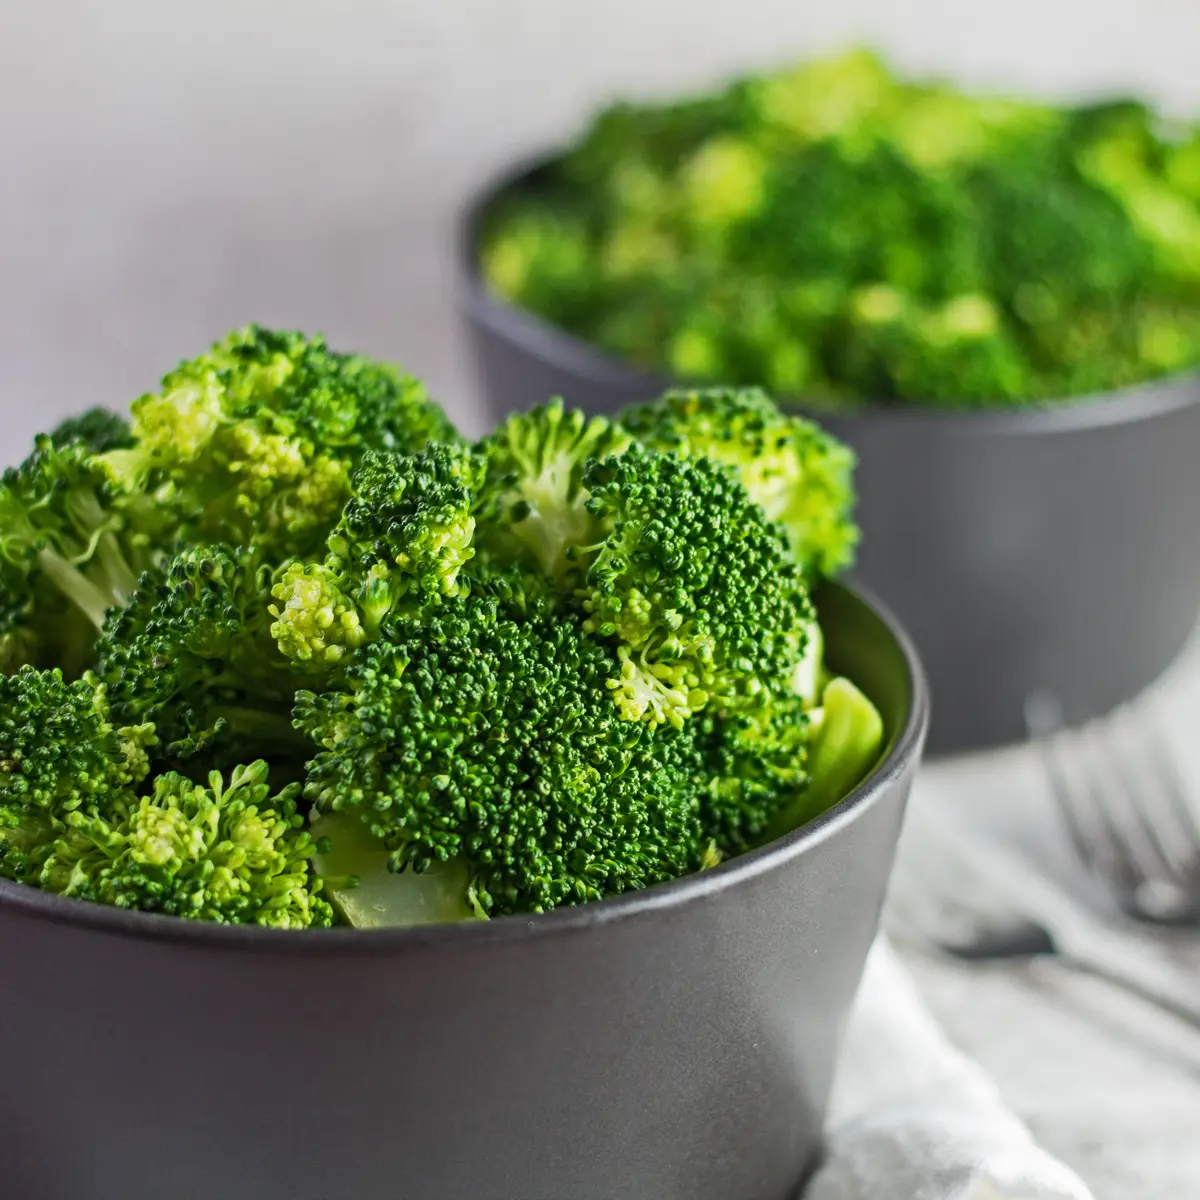 Dokonale uvařená brokolice v páře podávaná po vaření v mikrovlnce.